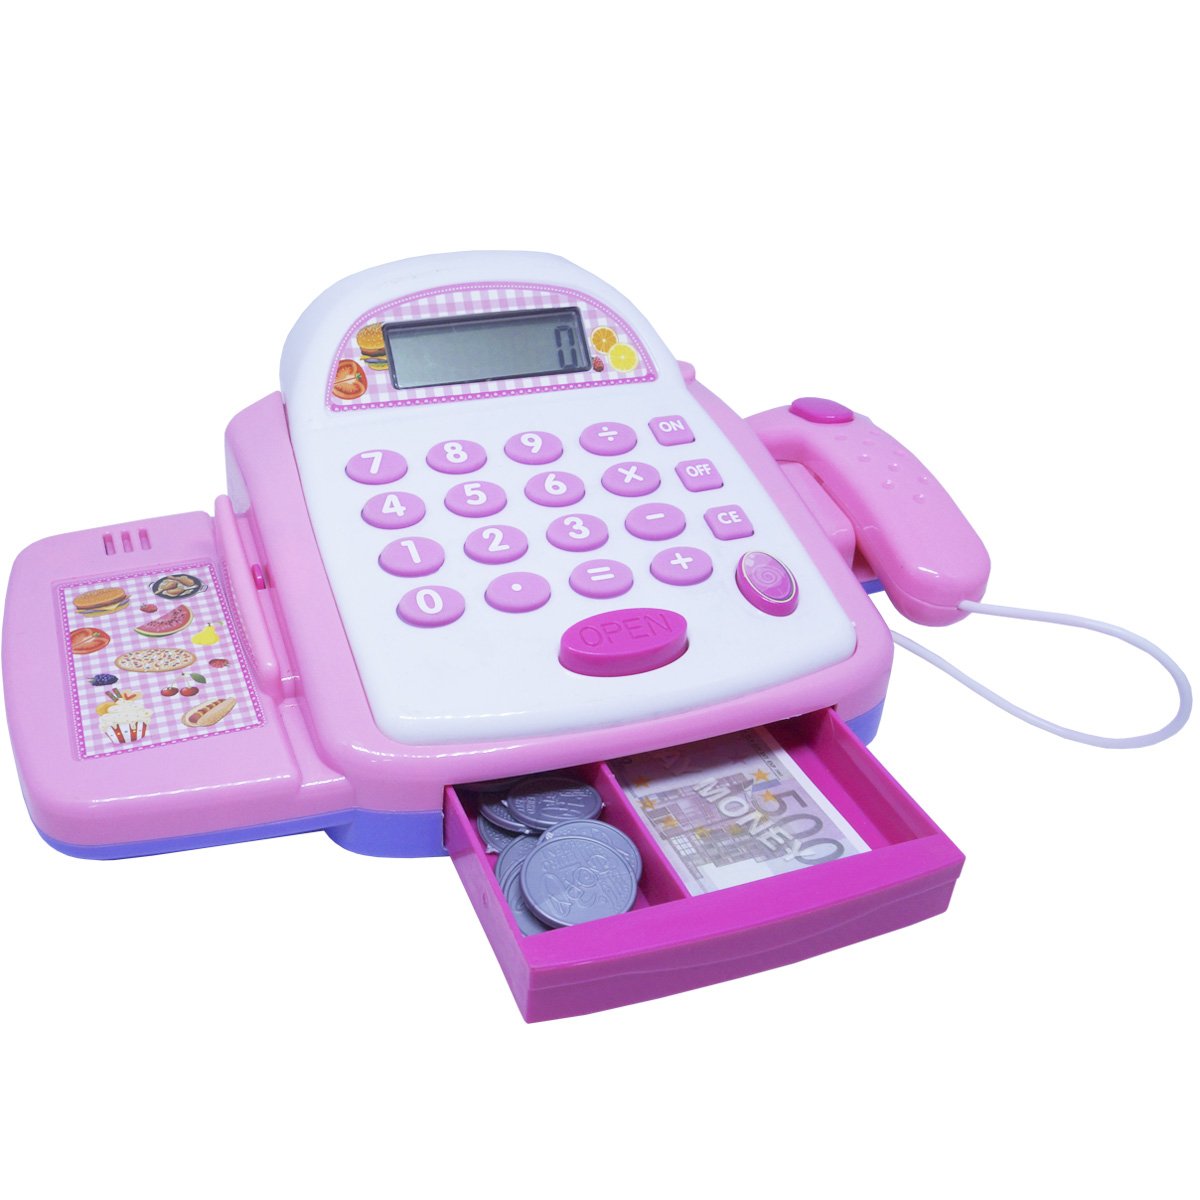 Caixa Registradora Infantil Brinquedo Calculadora Mercadinho com Luz e Som Importway BW042RS Rosa - 2